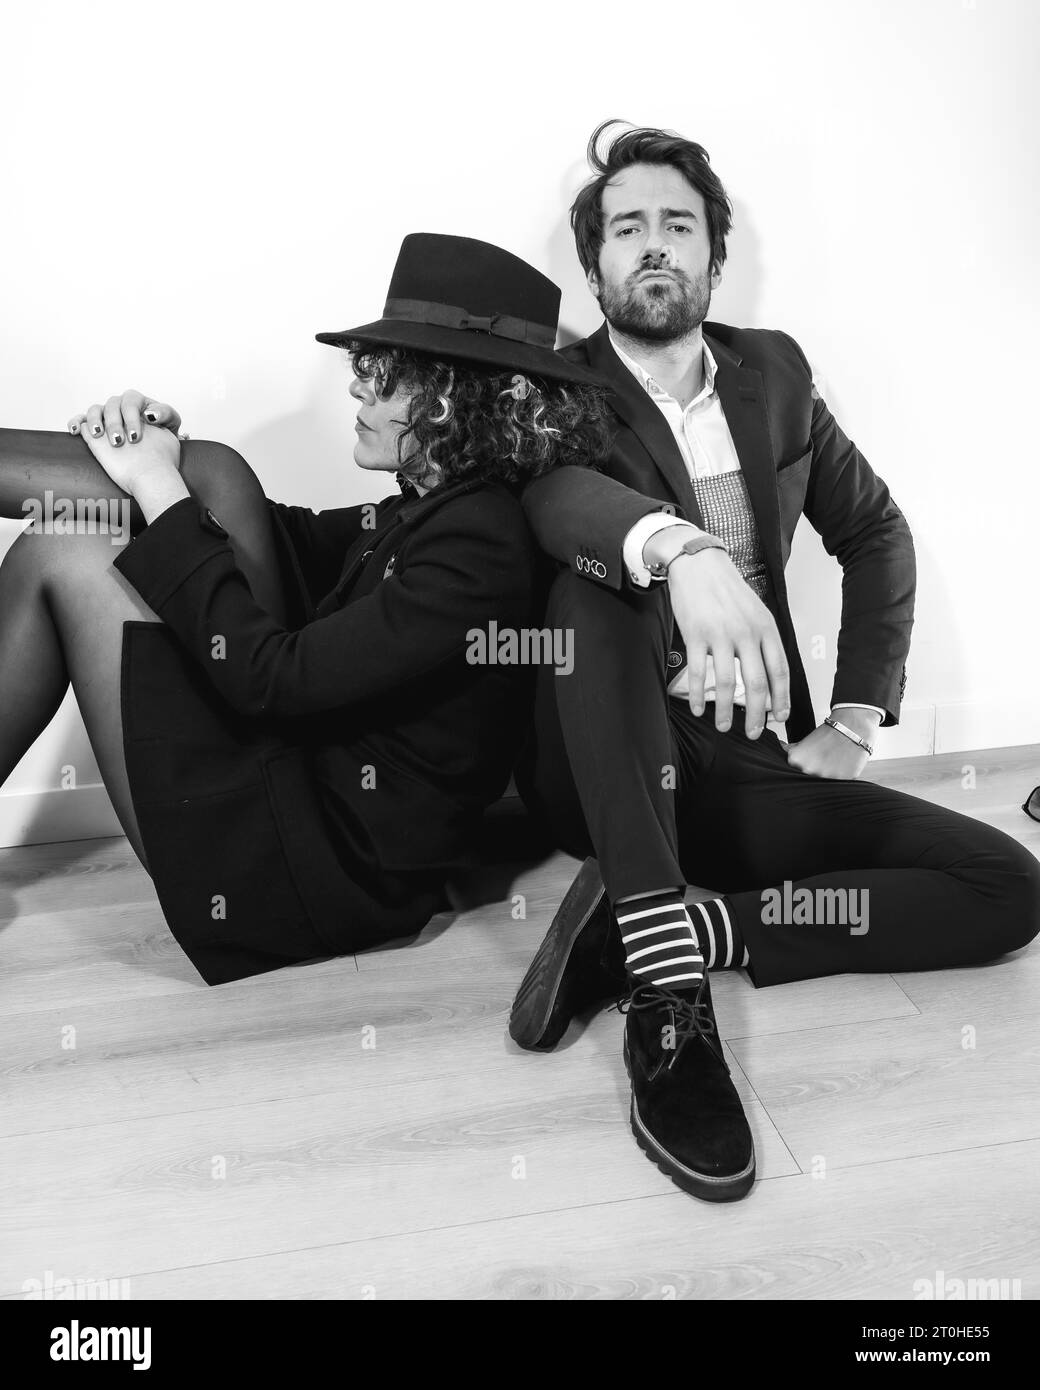 Ein kaukasisches Paar, das in einem schwarz-weißen Modeschuss auf dem Boden sitzt, in eleganten Anzügen und mit seriösem Aussehen Stockfoto